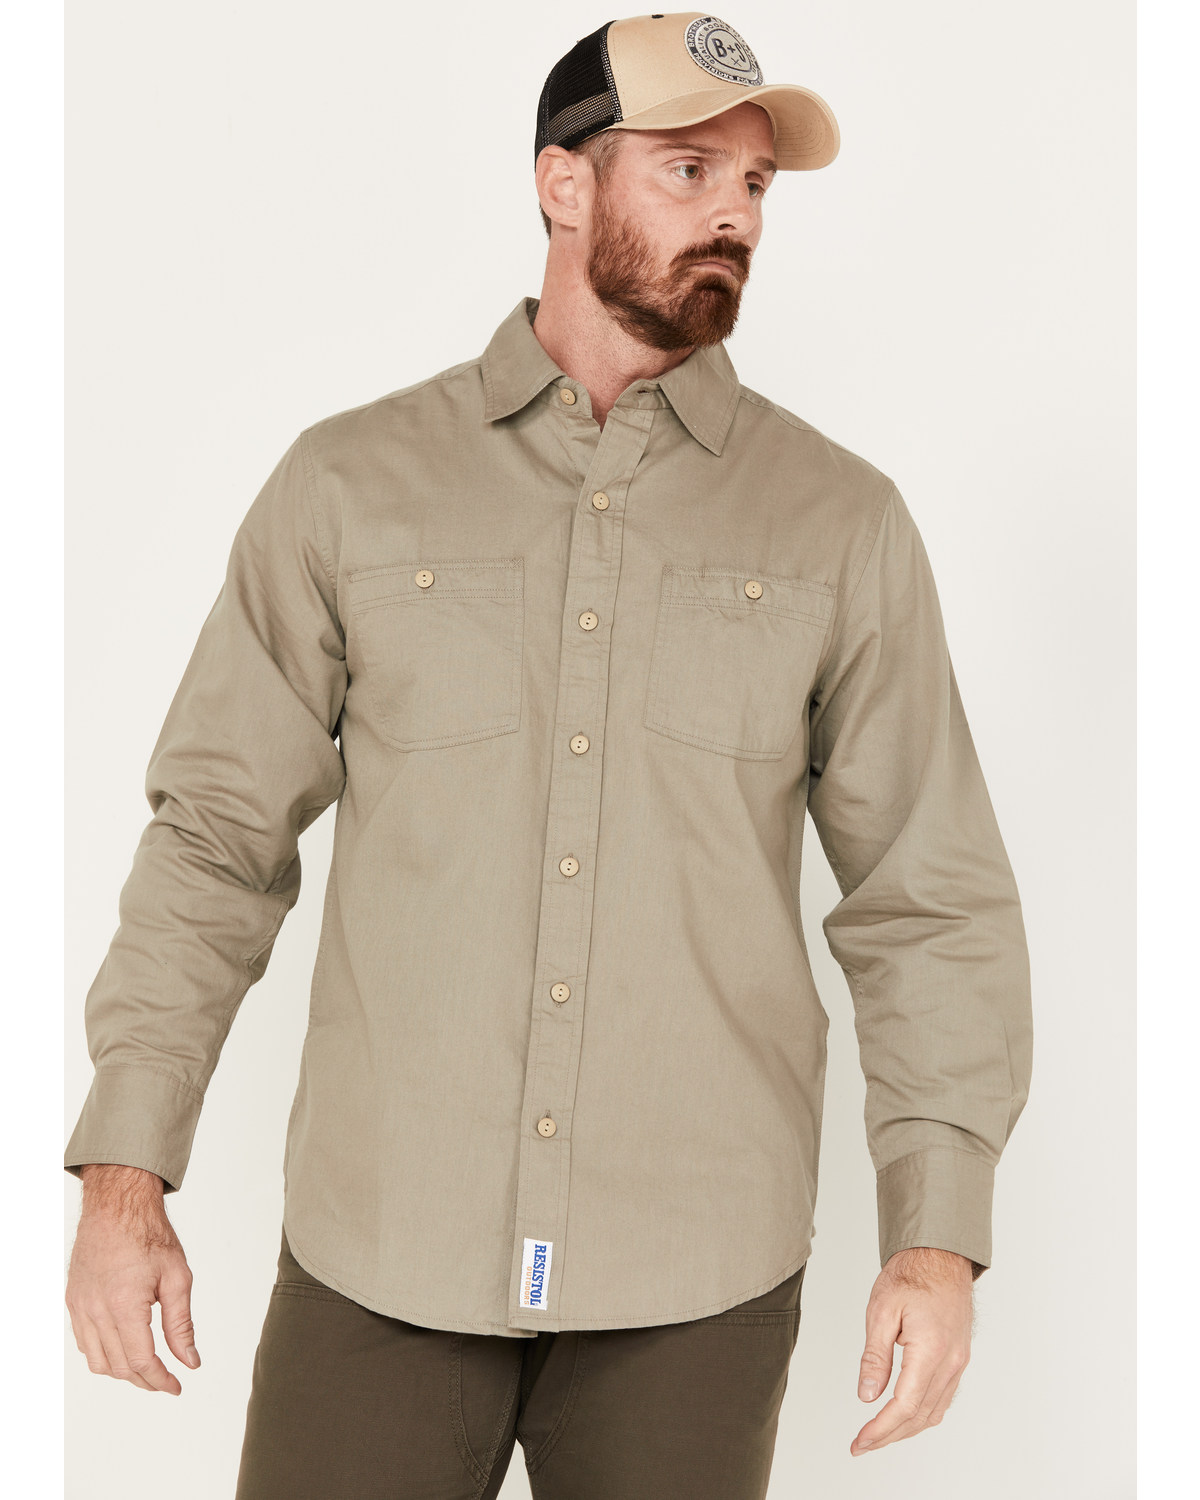 Resistol Men's Aspen Long Sleeve Button Down Western Shirt